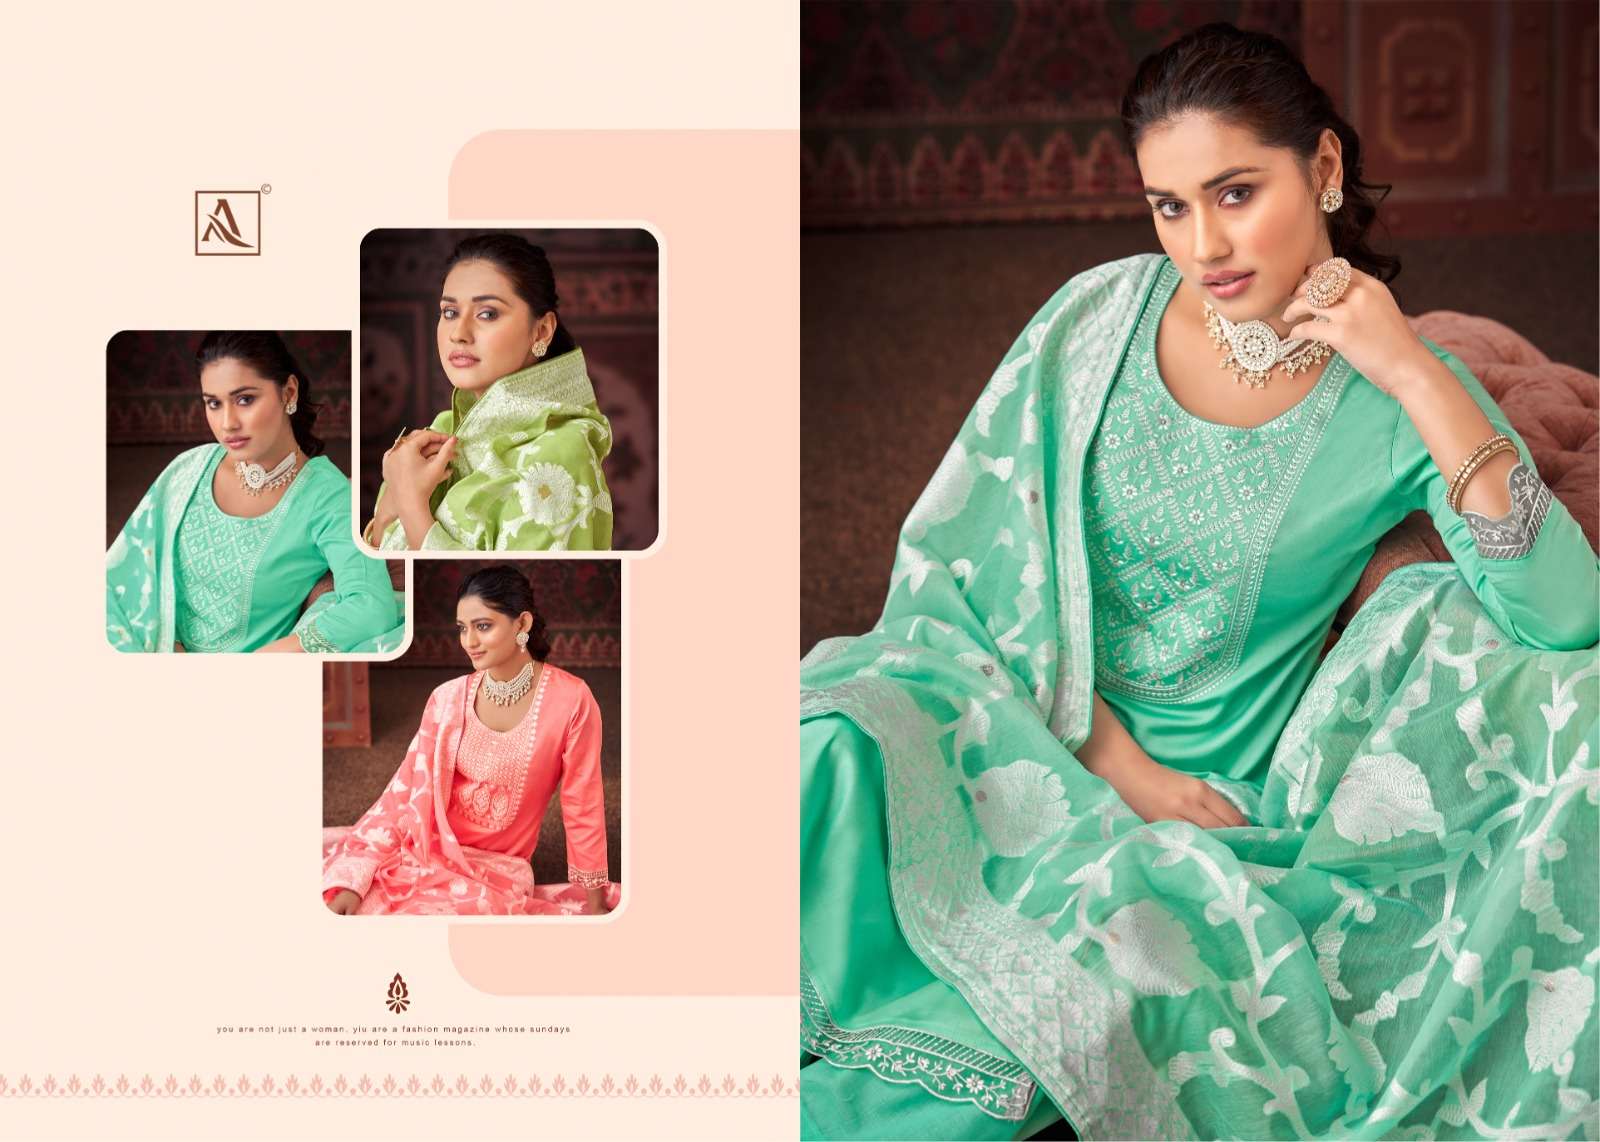 alok suit classic touch-13 latest designer fancy wedding salwar kameez wholesaler surat